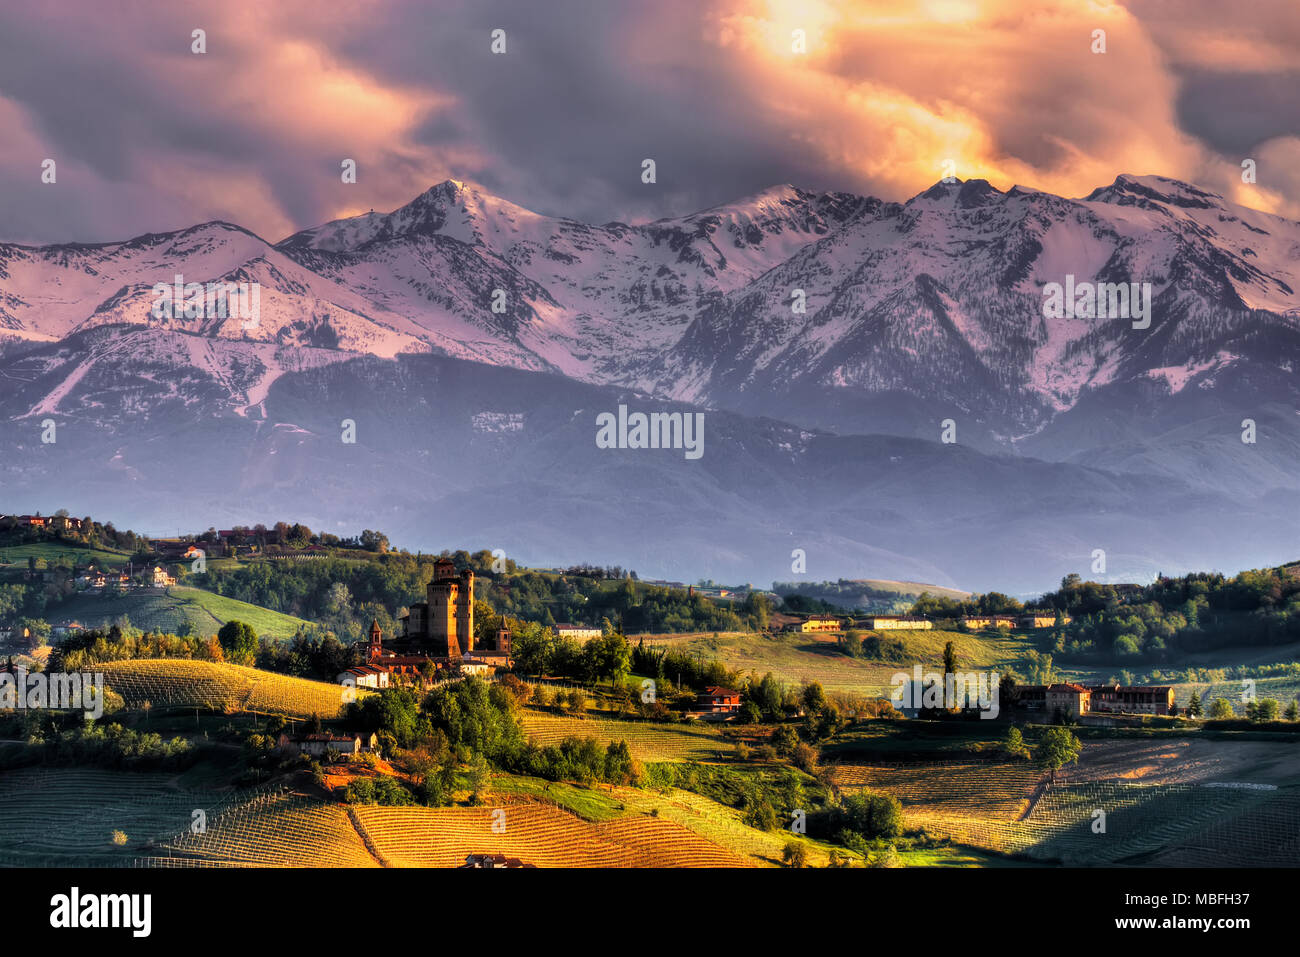 Il castello di Serralunga d'Alba, con lo sfondo delle Alpi, al tramonto. Siamo nelle Langhe piemontesi. UNESCO - Sito Patrimonio dell'umanità. Foto Stock